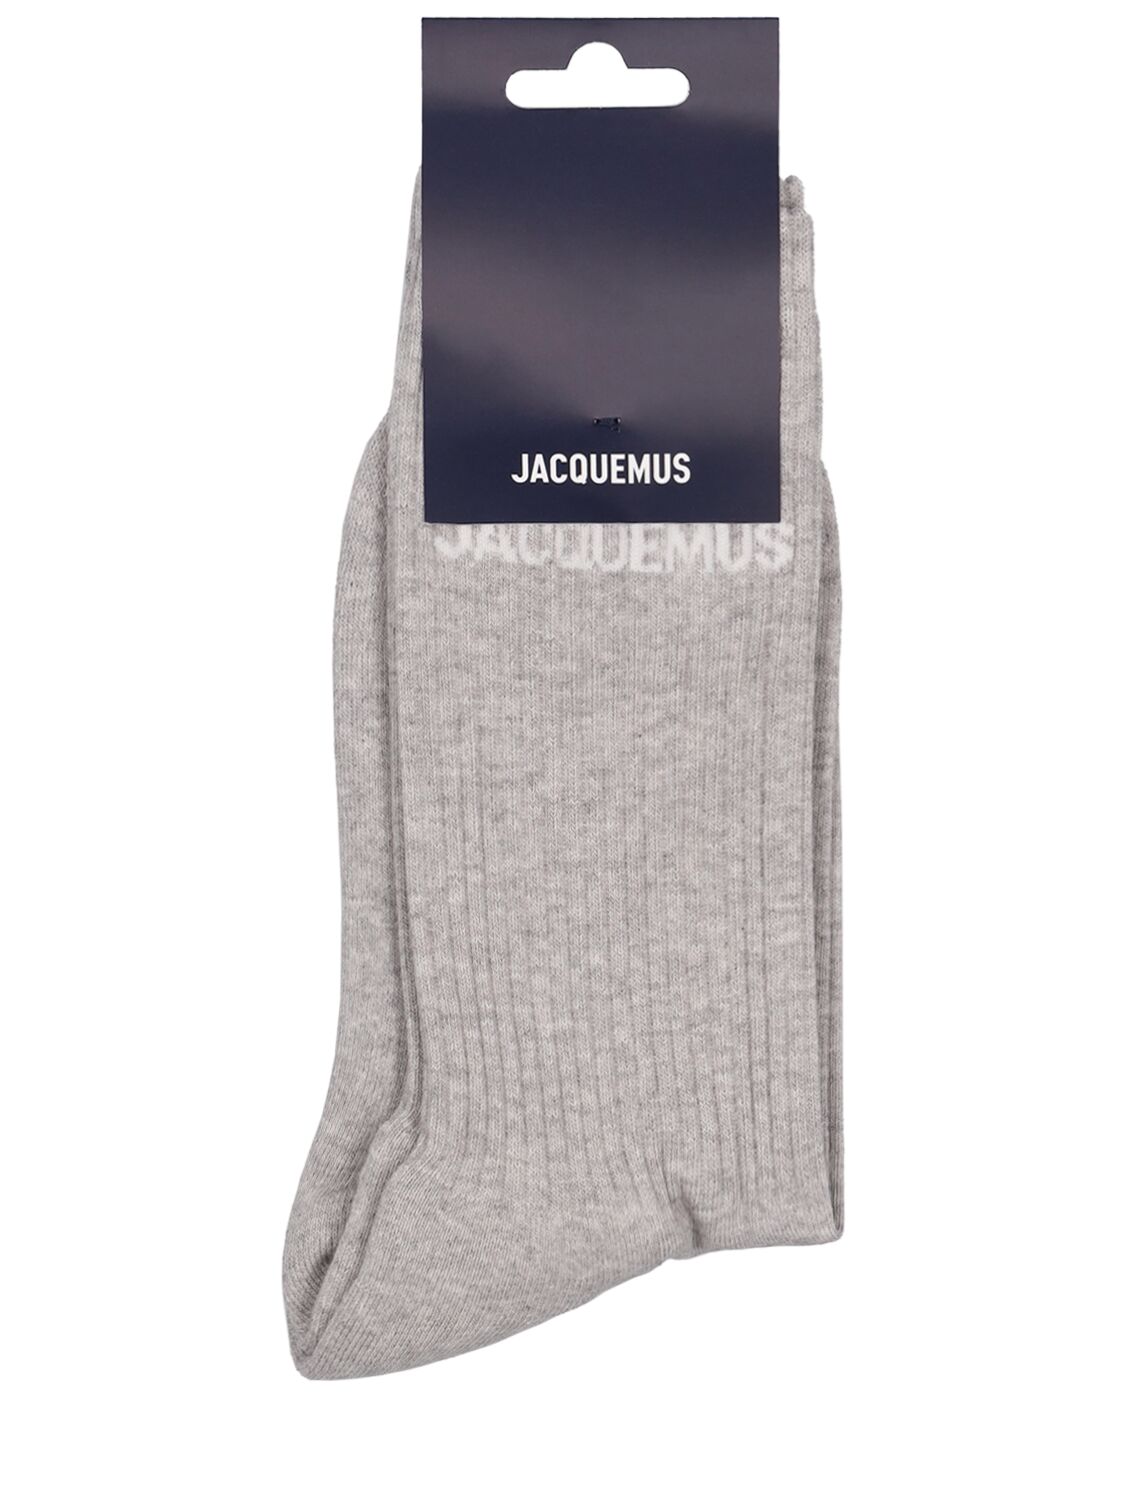 Jacquemus Les Chaussettes Cotton Blend Socks In Grey